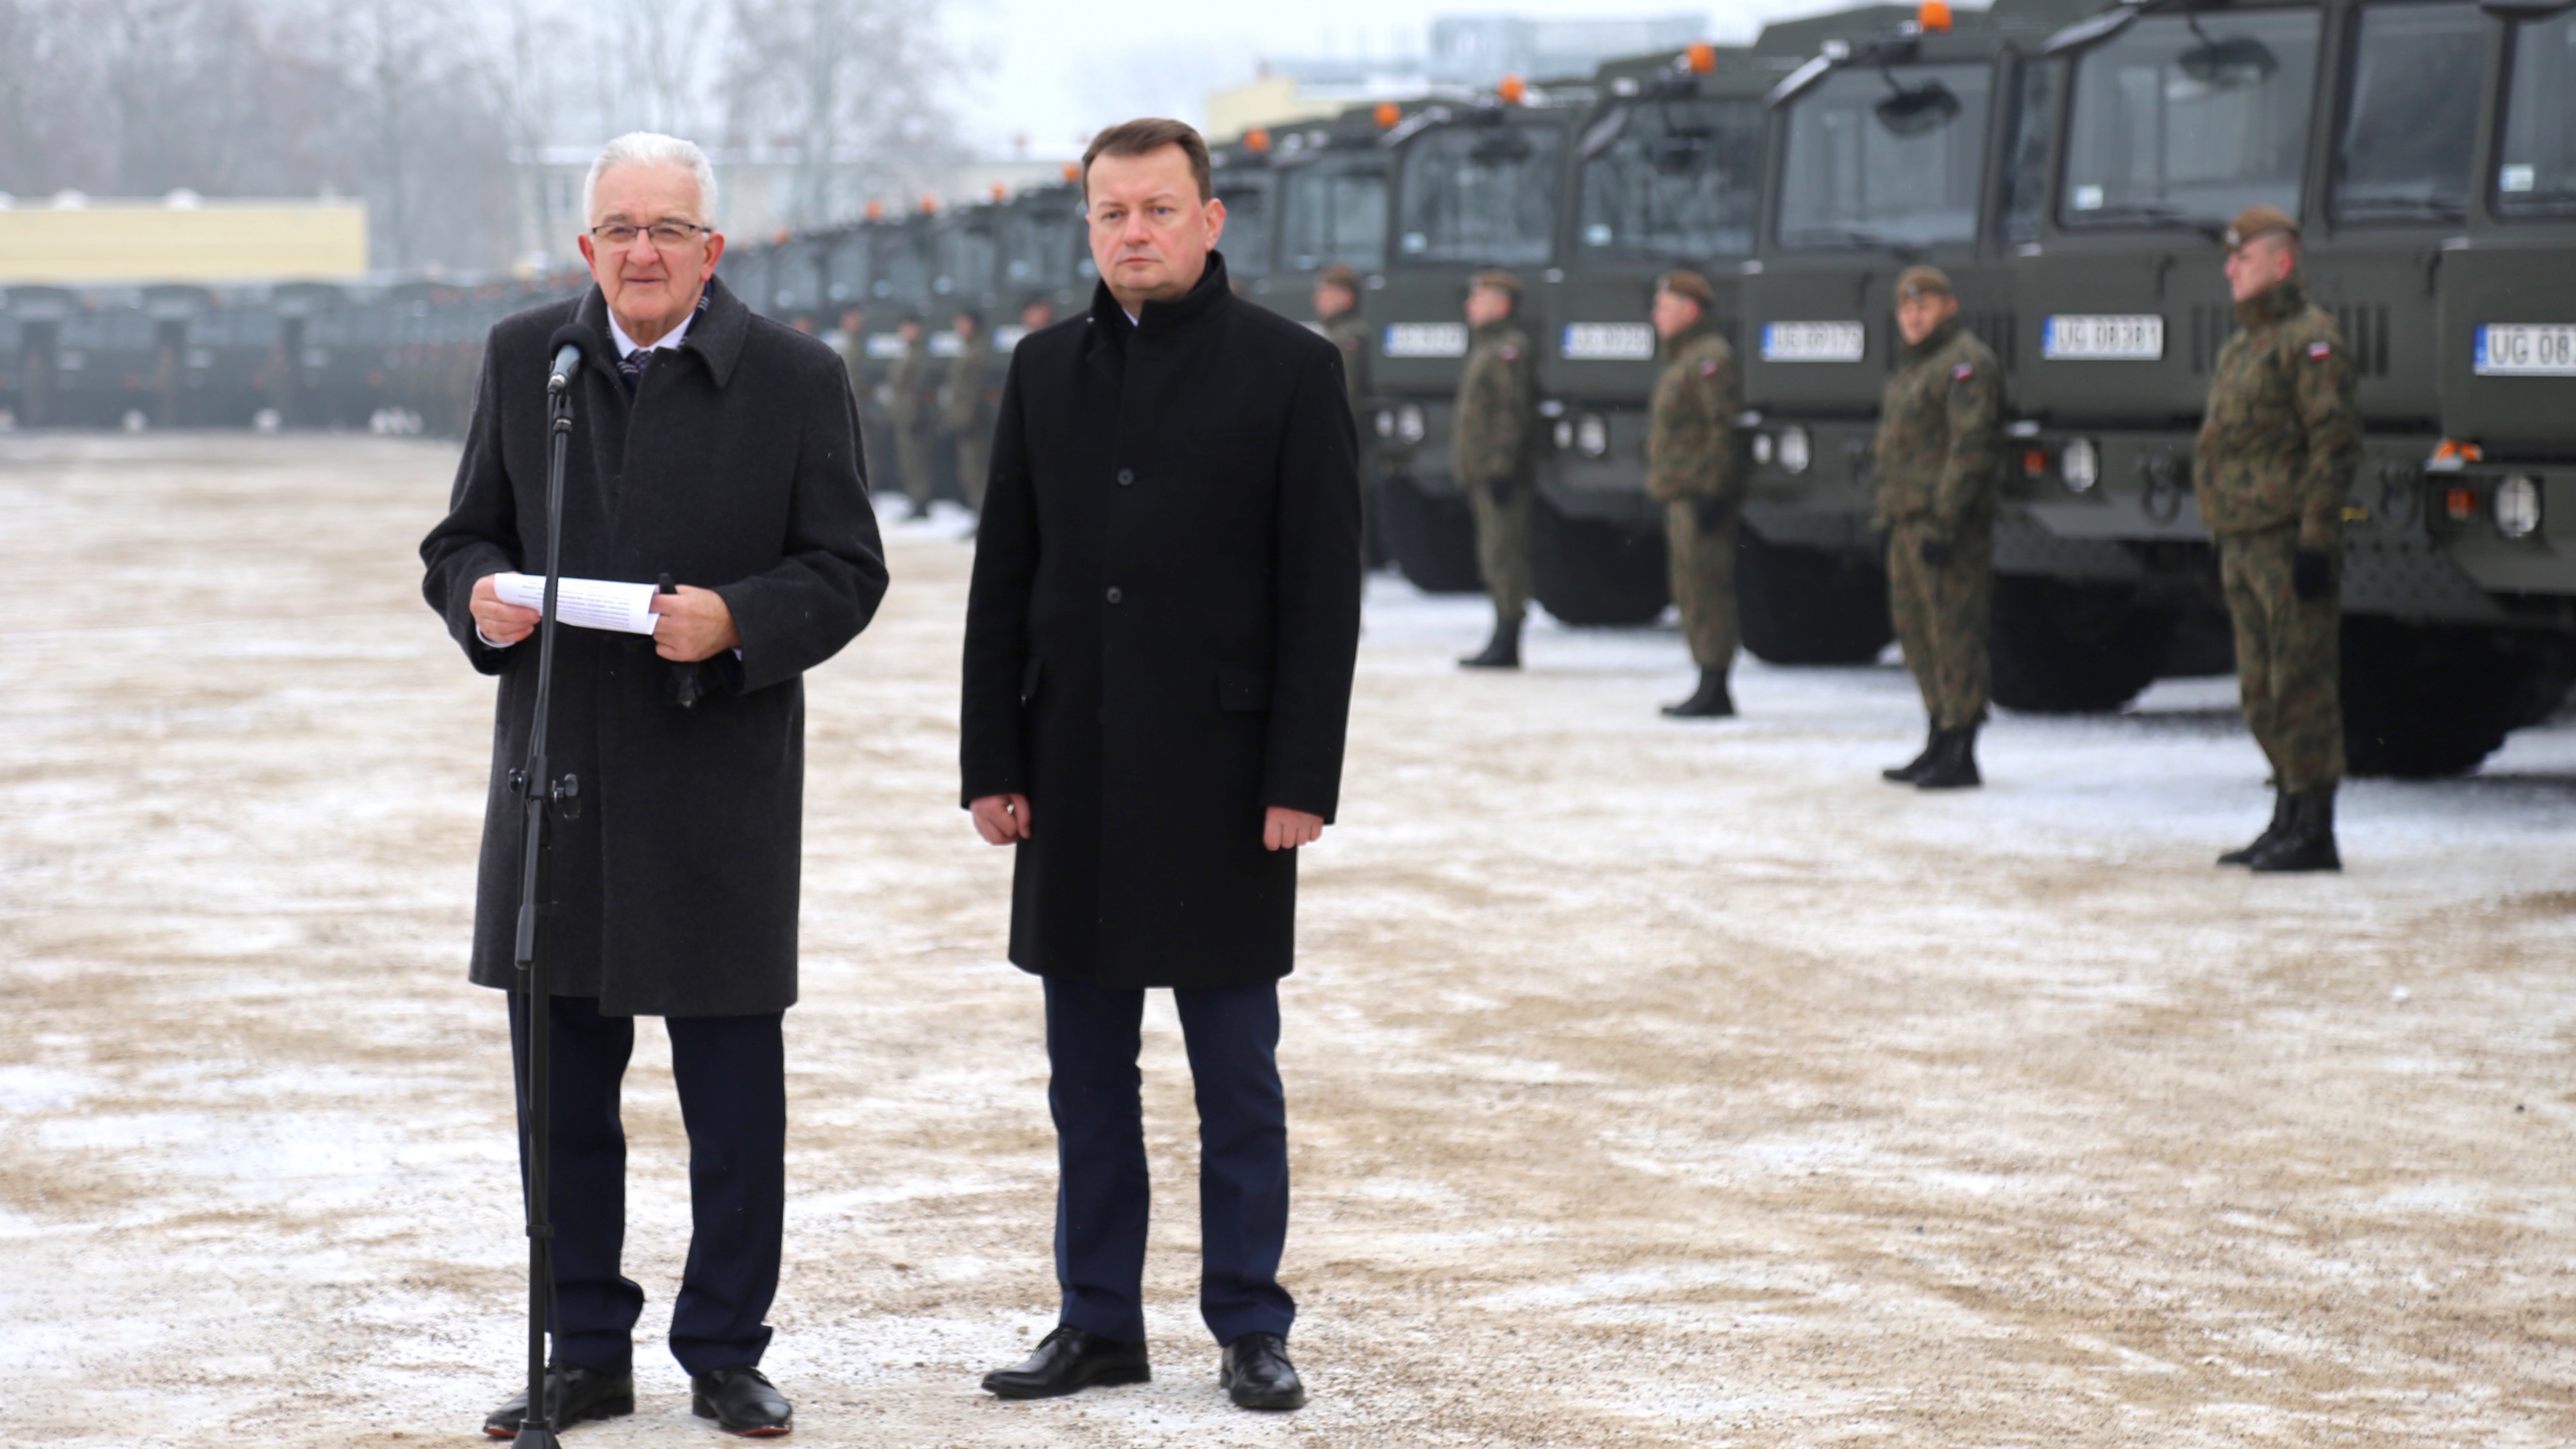 P.o. prezes Jelcz sp. z o.o. Leon Szuturma (z lewej) i szef MON Mariusz Błaszczak. Fot. Rafał Lesiecki / Defence24.pl